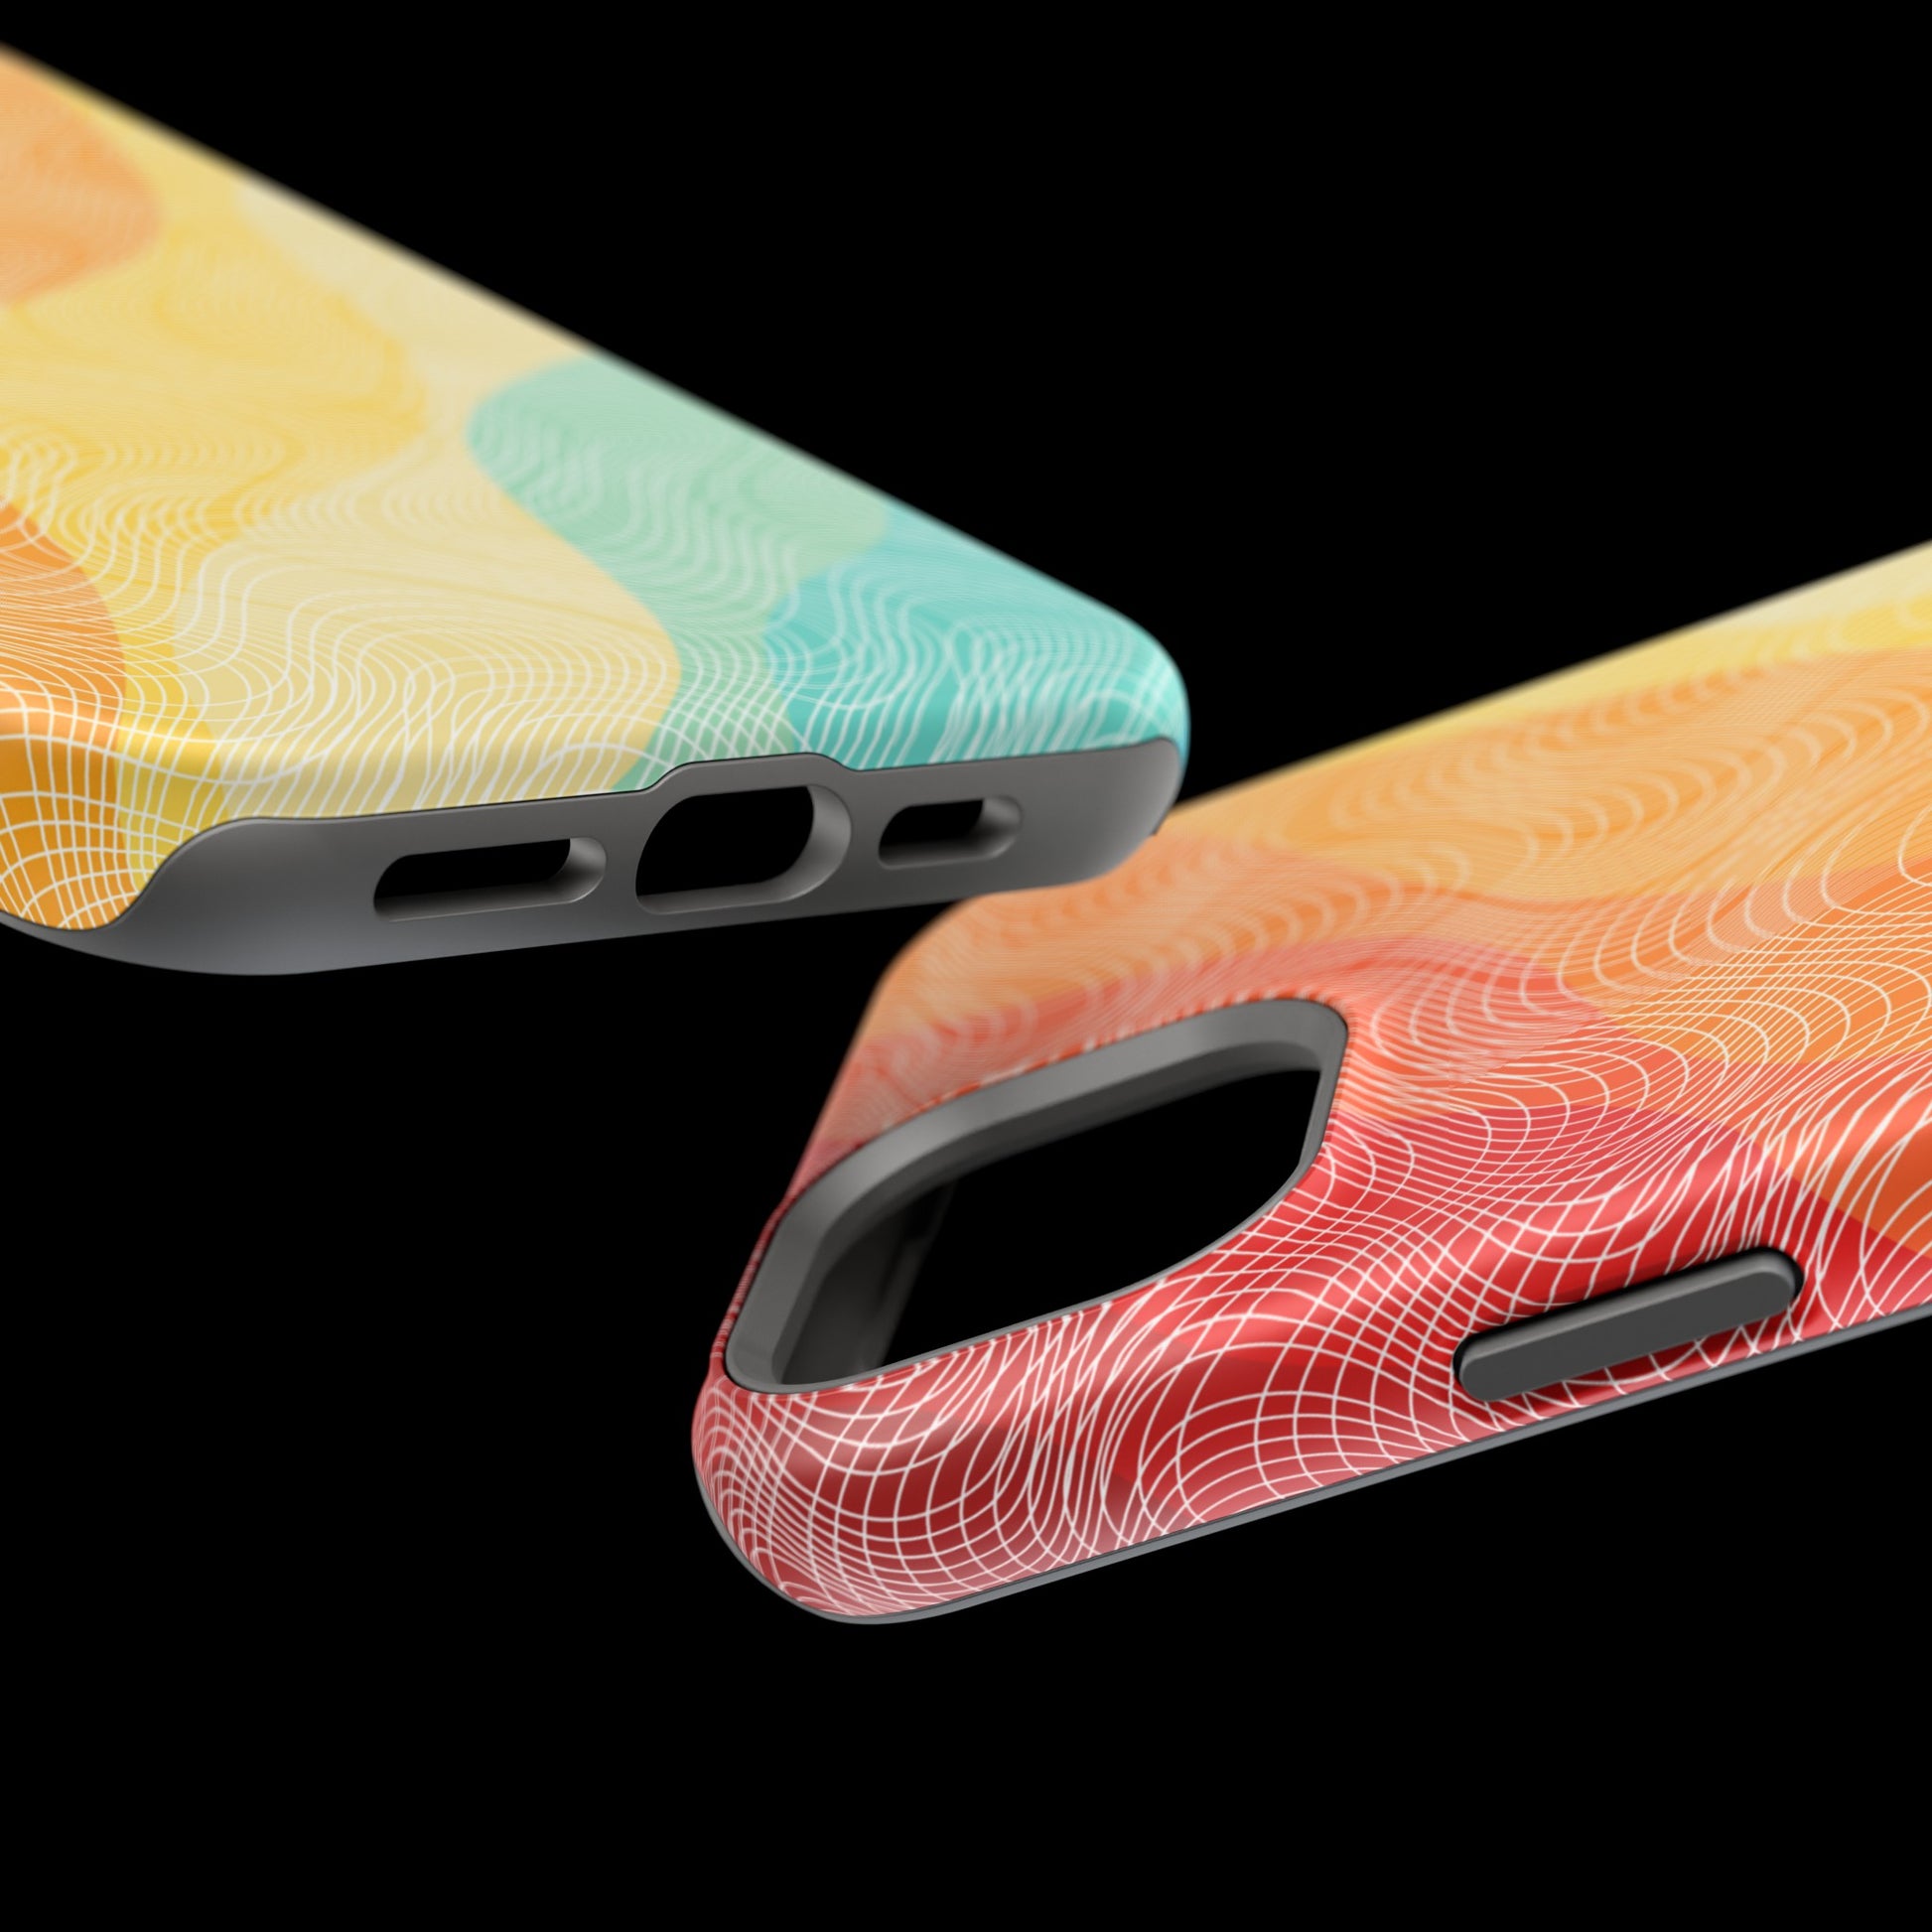 Vibrant Vortex MagSafe Tough Case - Phone Case For